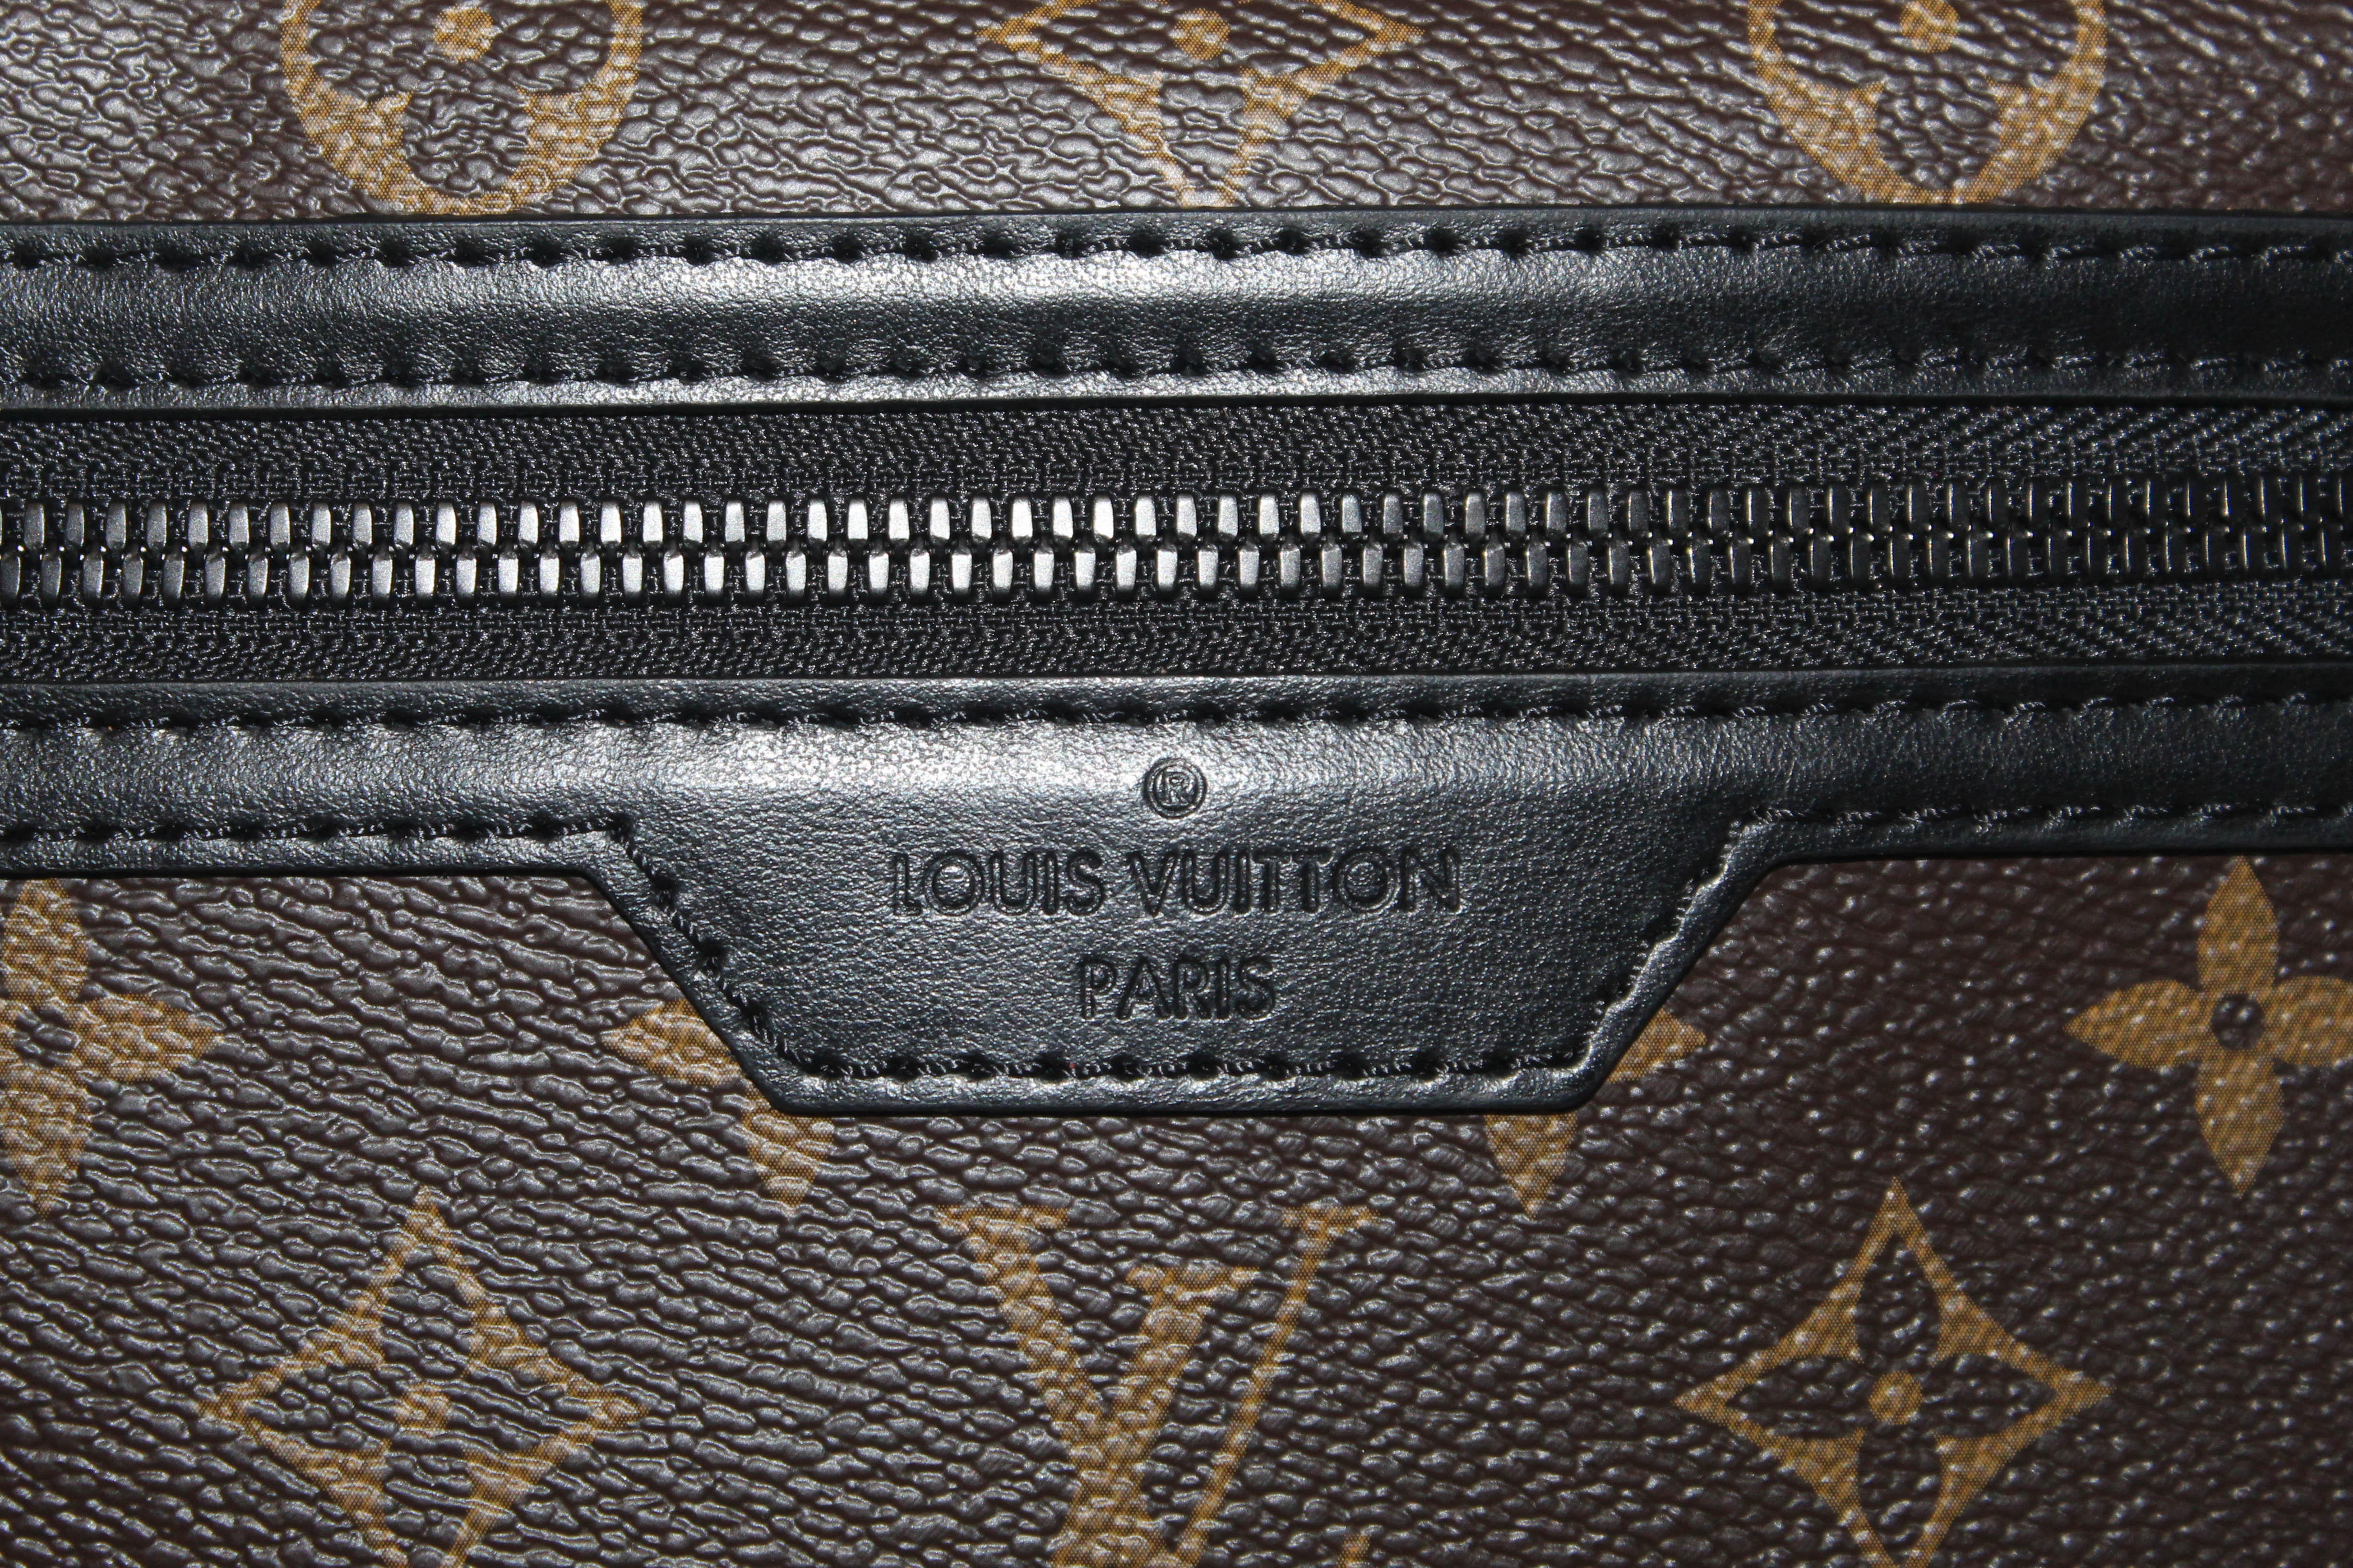 Authentic Louis Vuitton Monogram Double Flat Messenger Bag